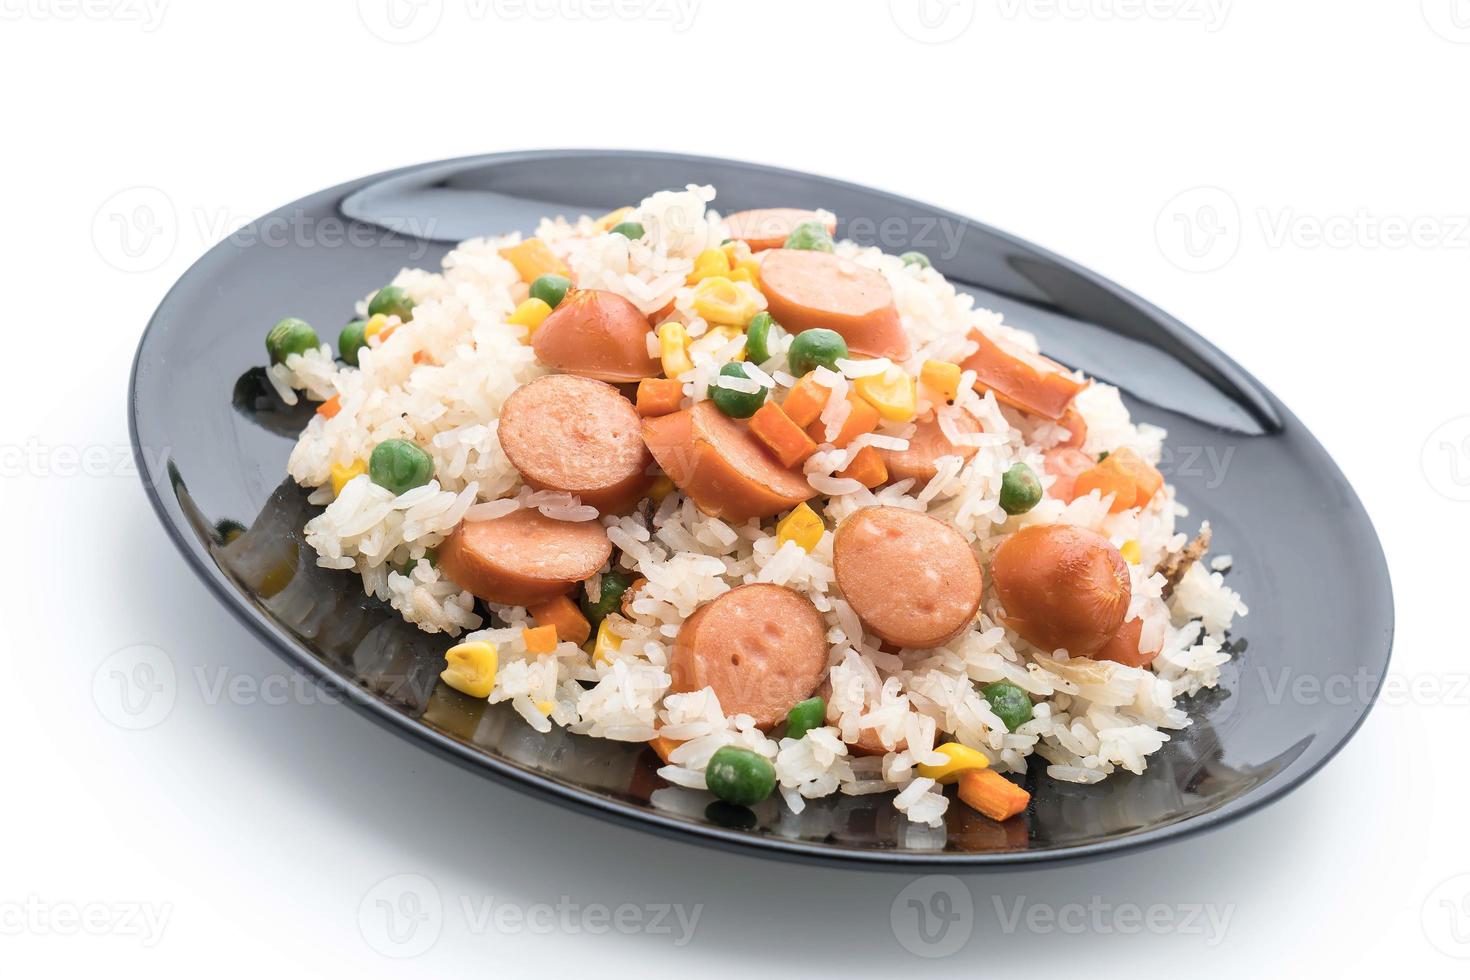 arroz frito com salsicha no fundo branco foto